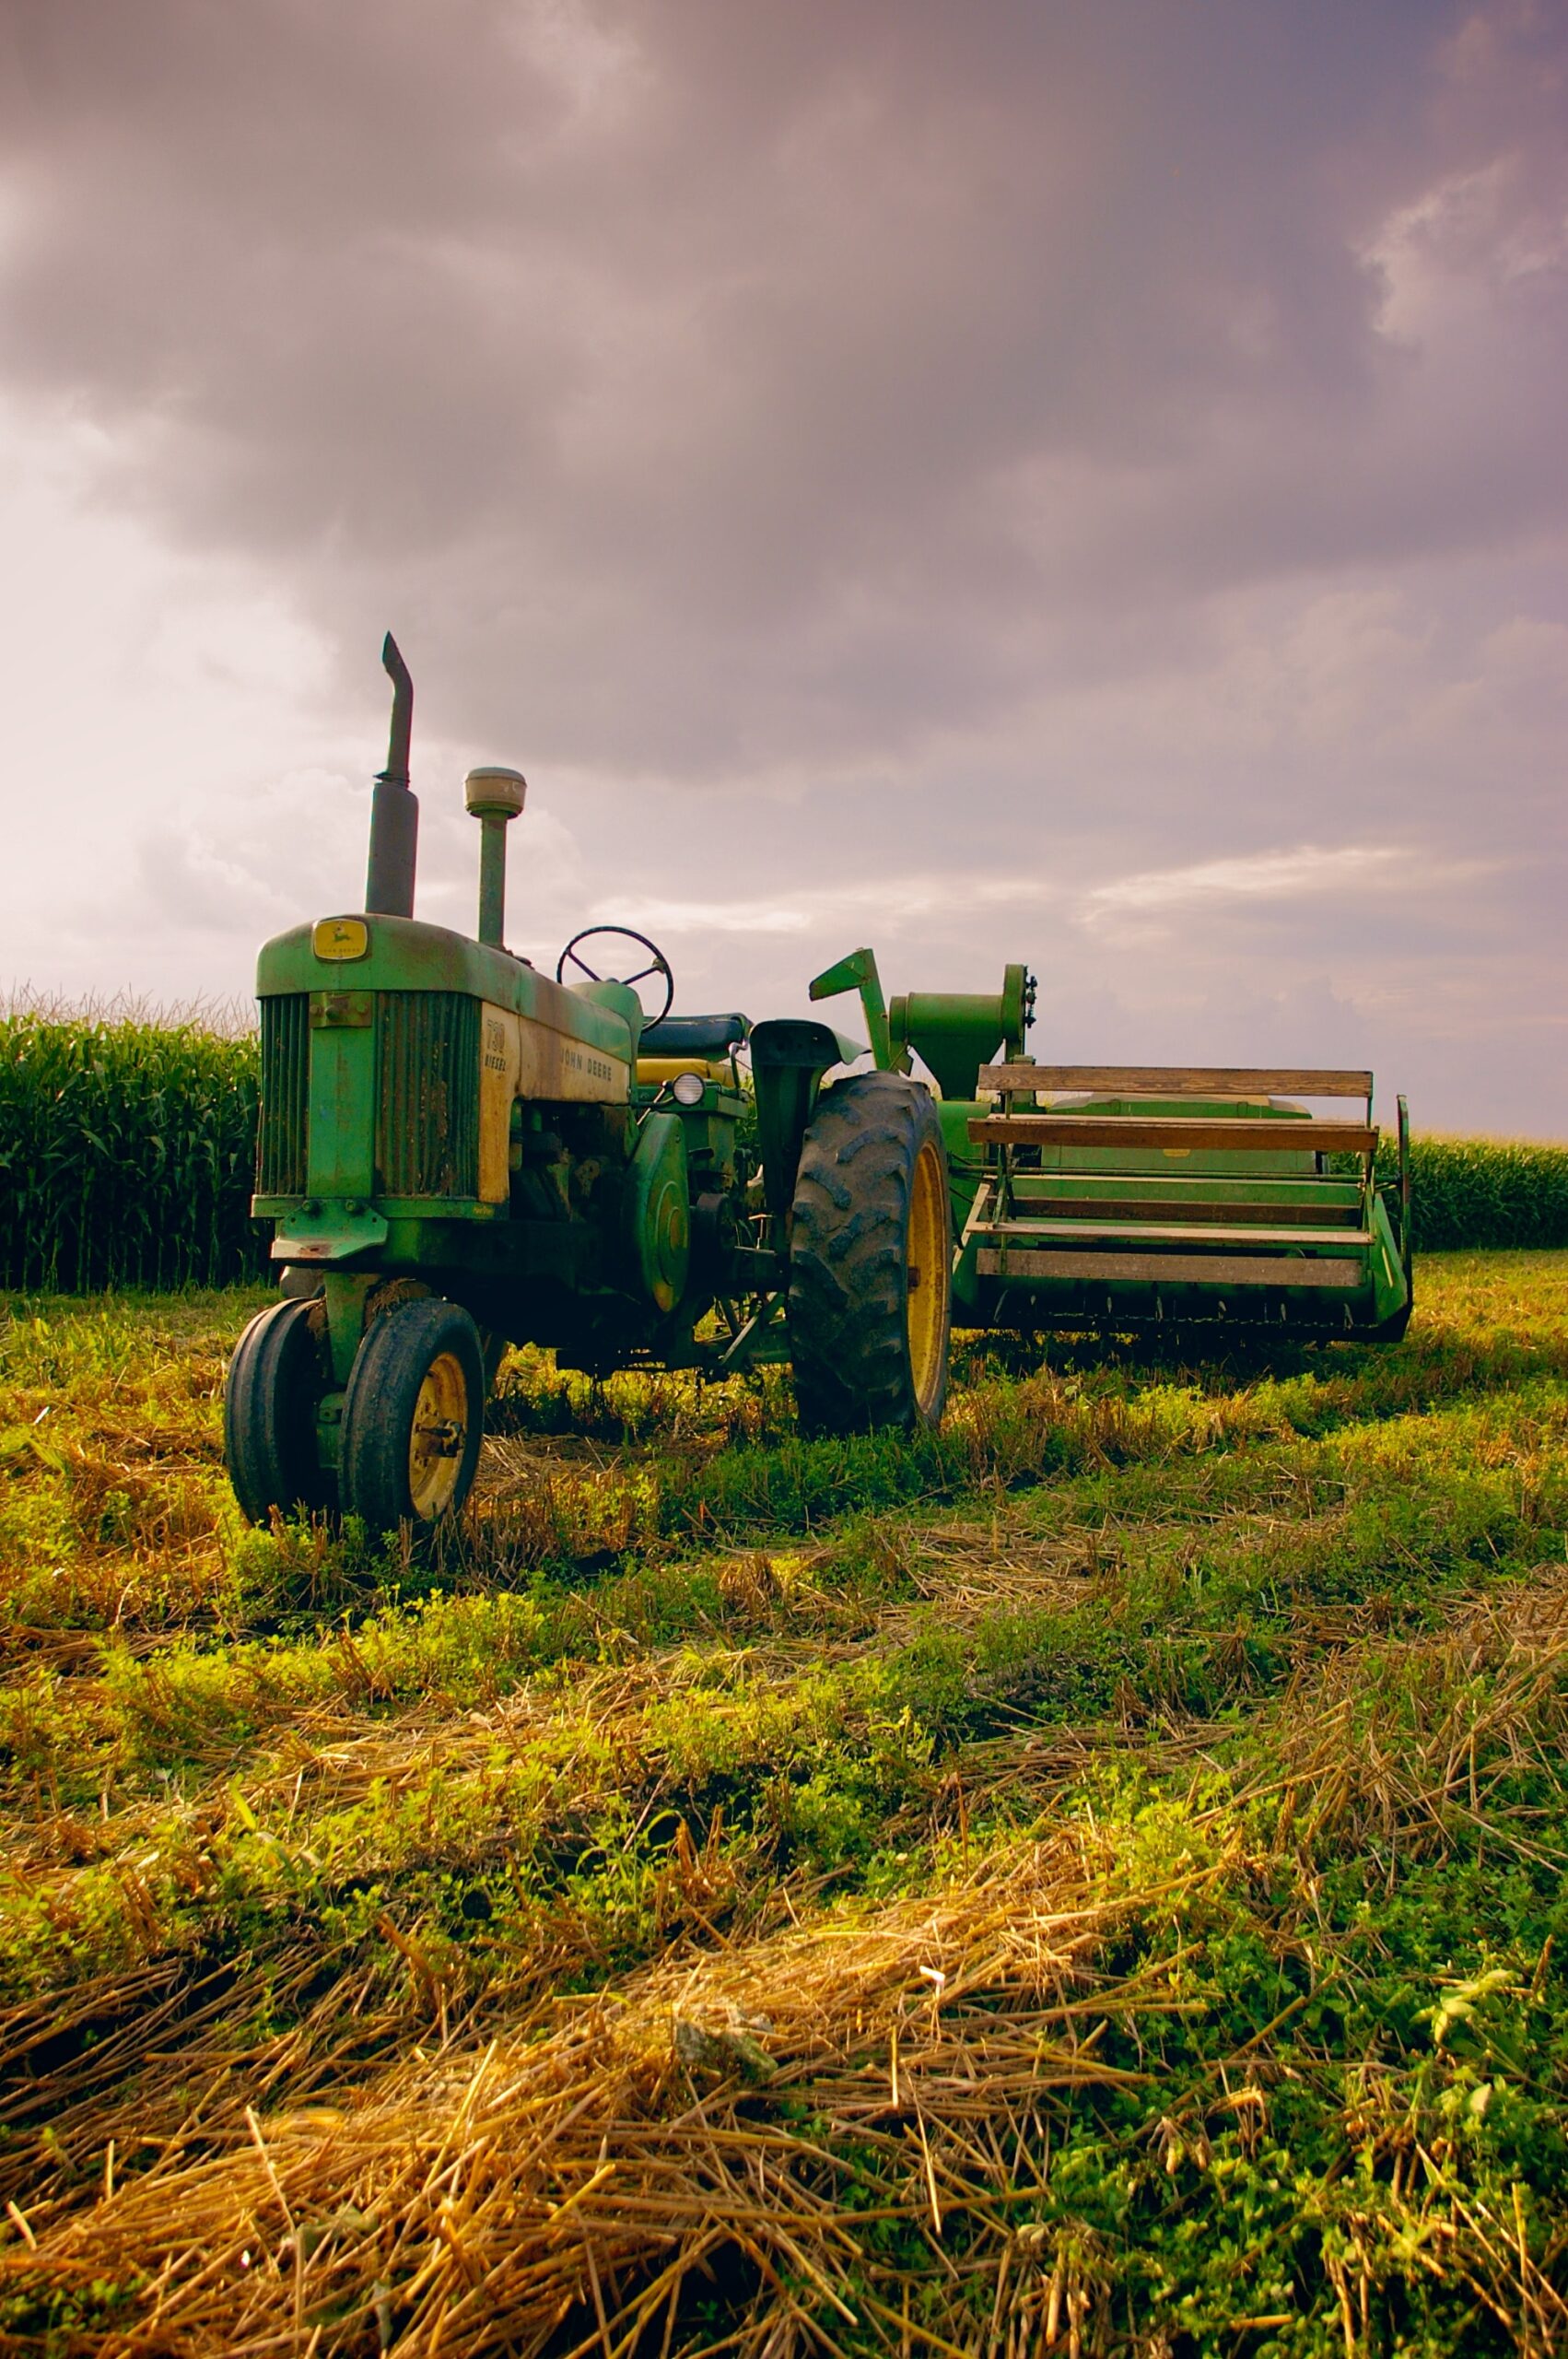 Bilden visar en traktor. Nu kan du hitta rätt tillbehör till traktorer online som exempelvis en harv eller slåtter. Traktorer behöver servas och repareras med rätt reservdelar.